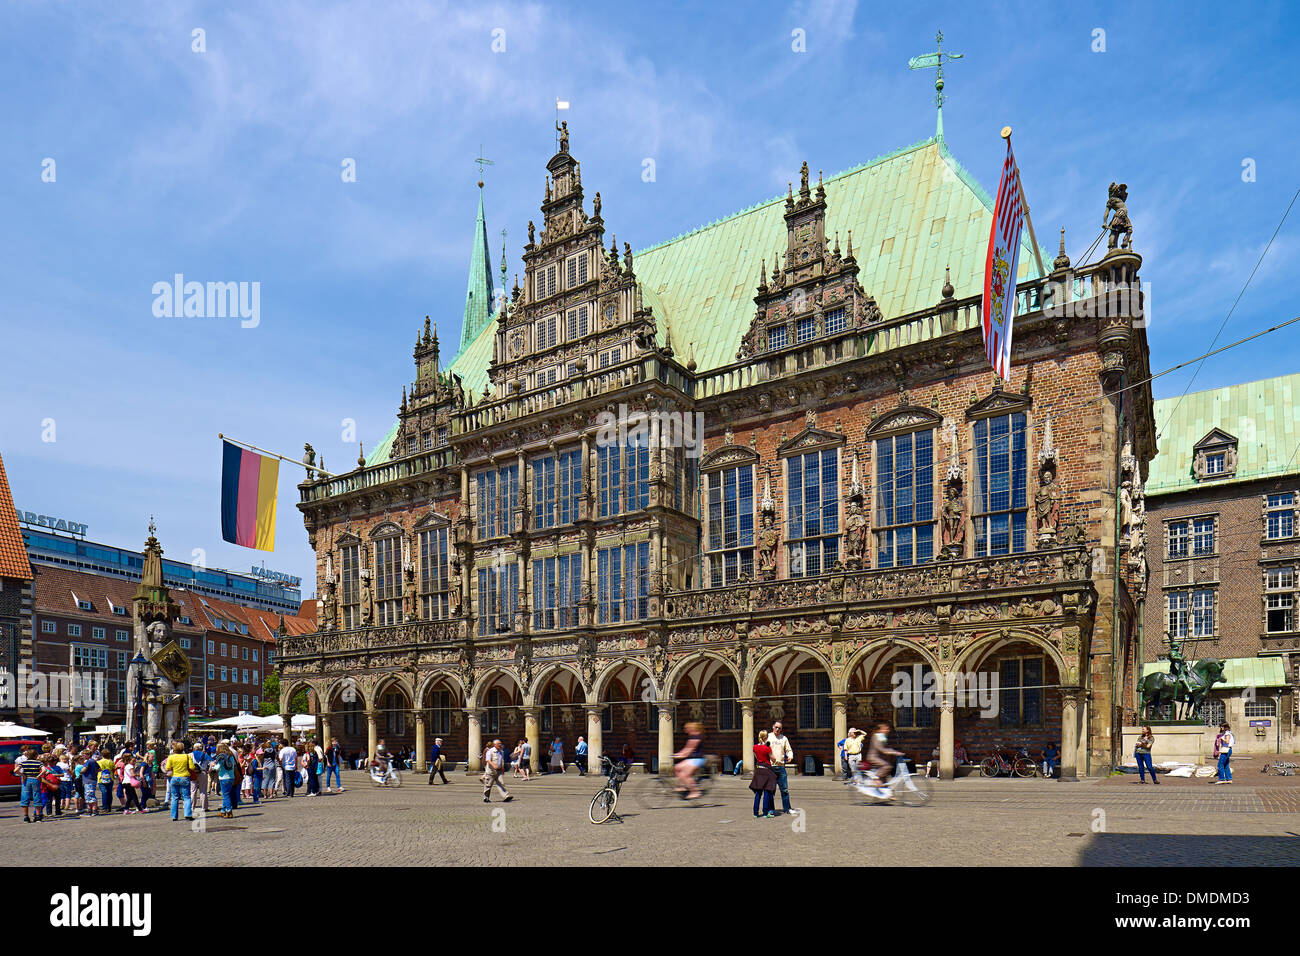 Altes Rathaus, Hansestadt Bremen, Bremen, Deutschland Stockfoto